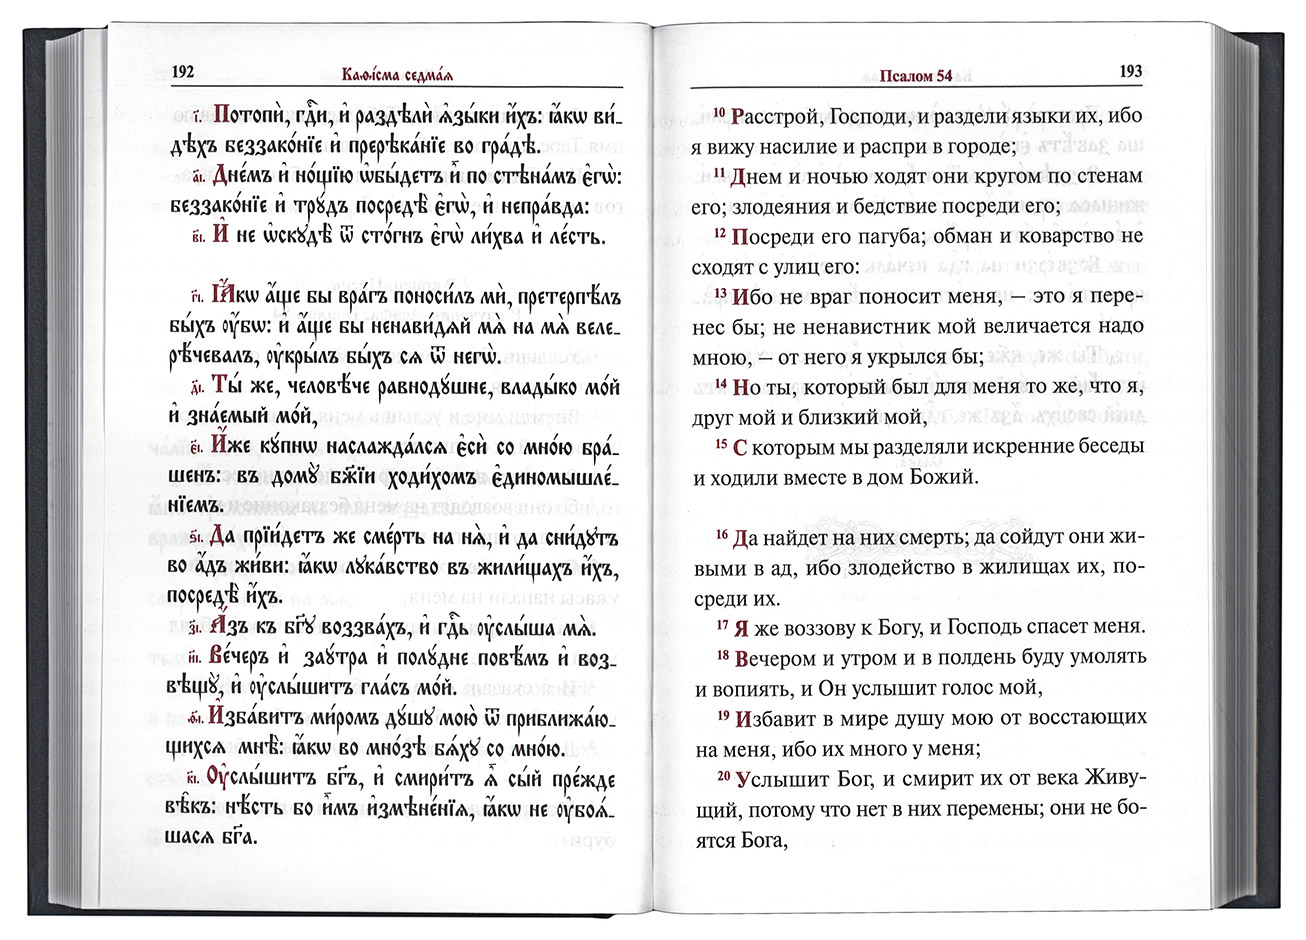 Кафизма 6 читать на церковно славянском